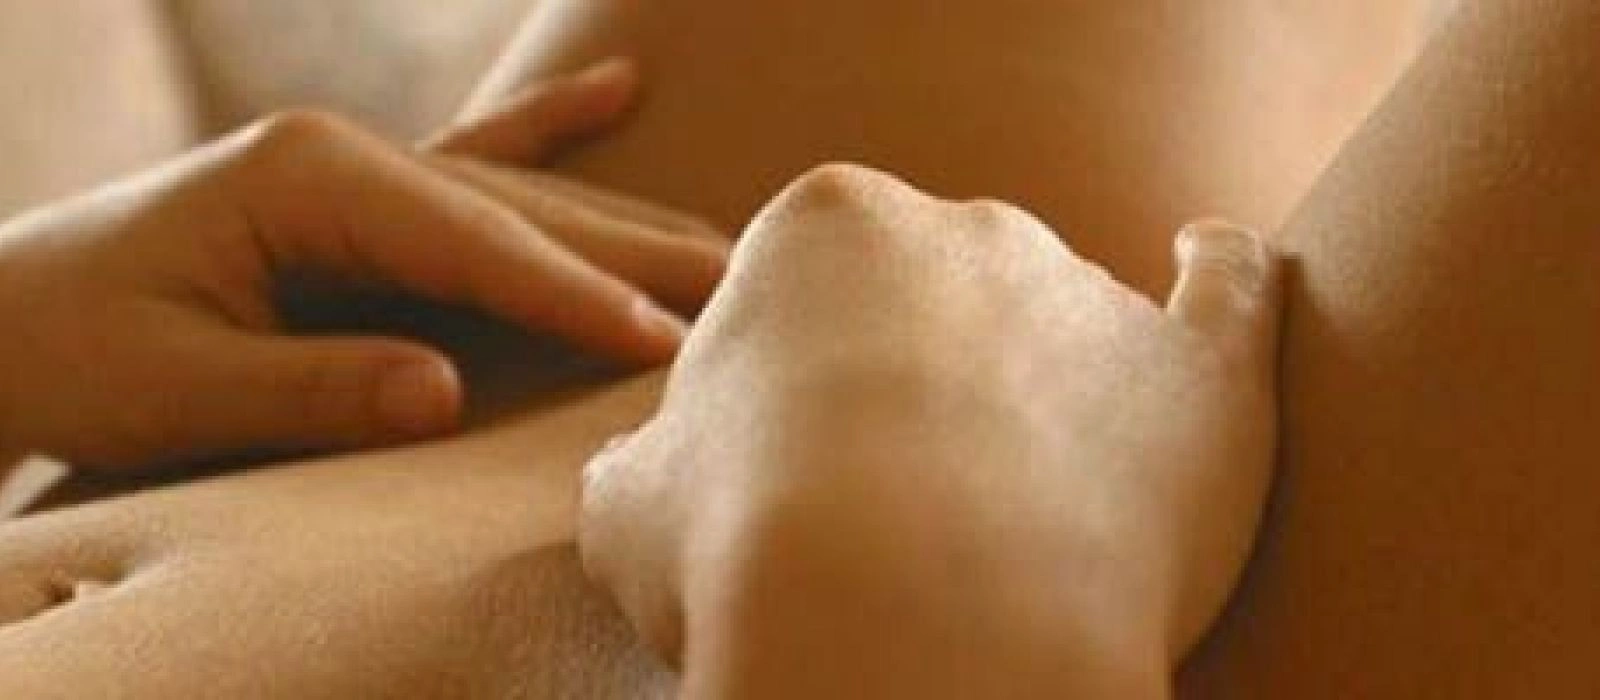 мастурбация у женщин польза или вред фото 31